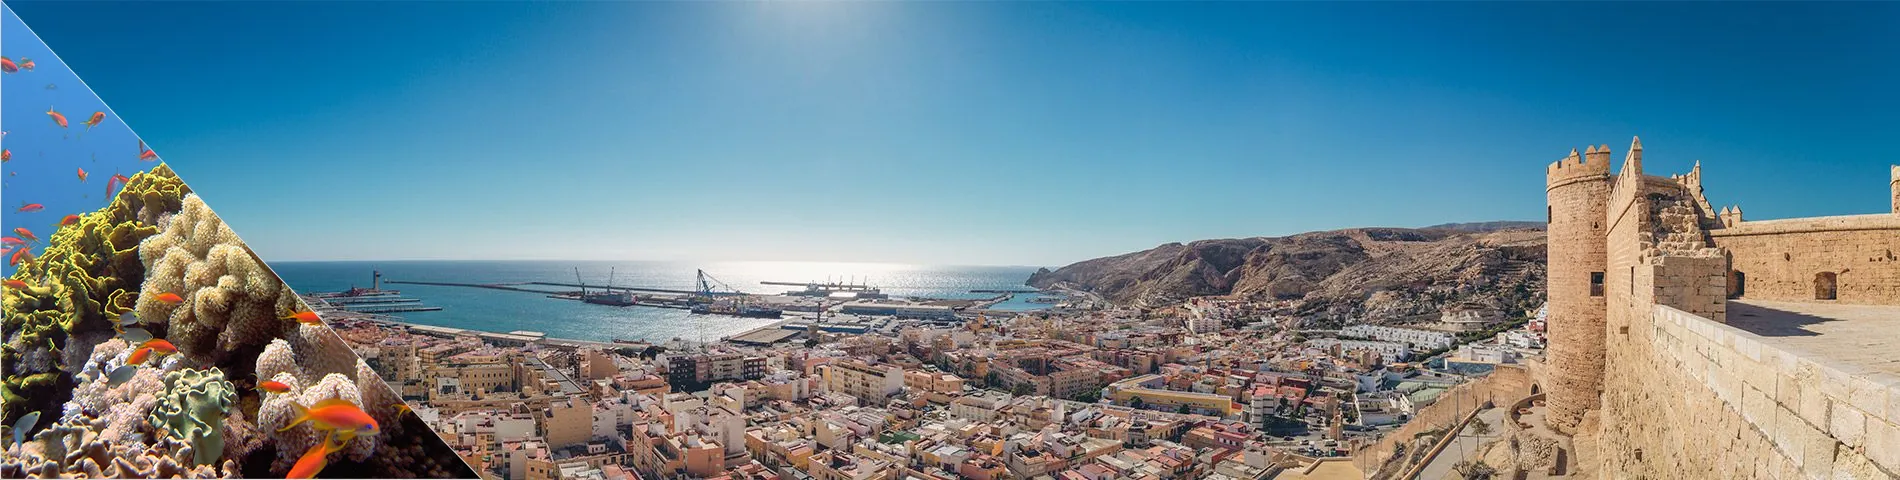 Almería - Španielčina a potápanie